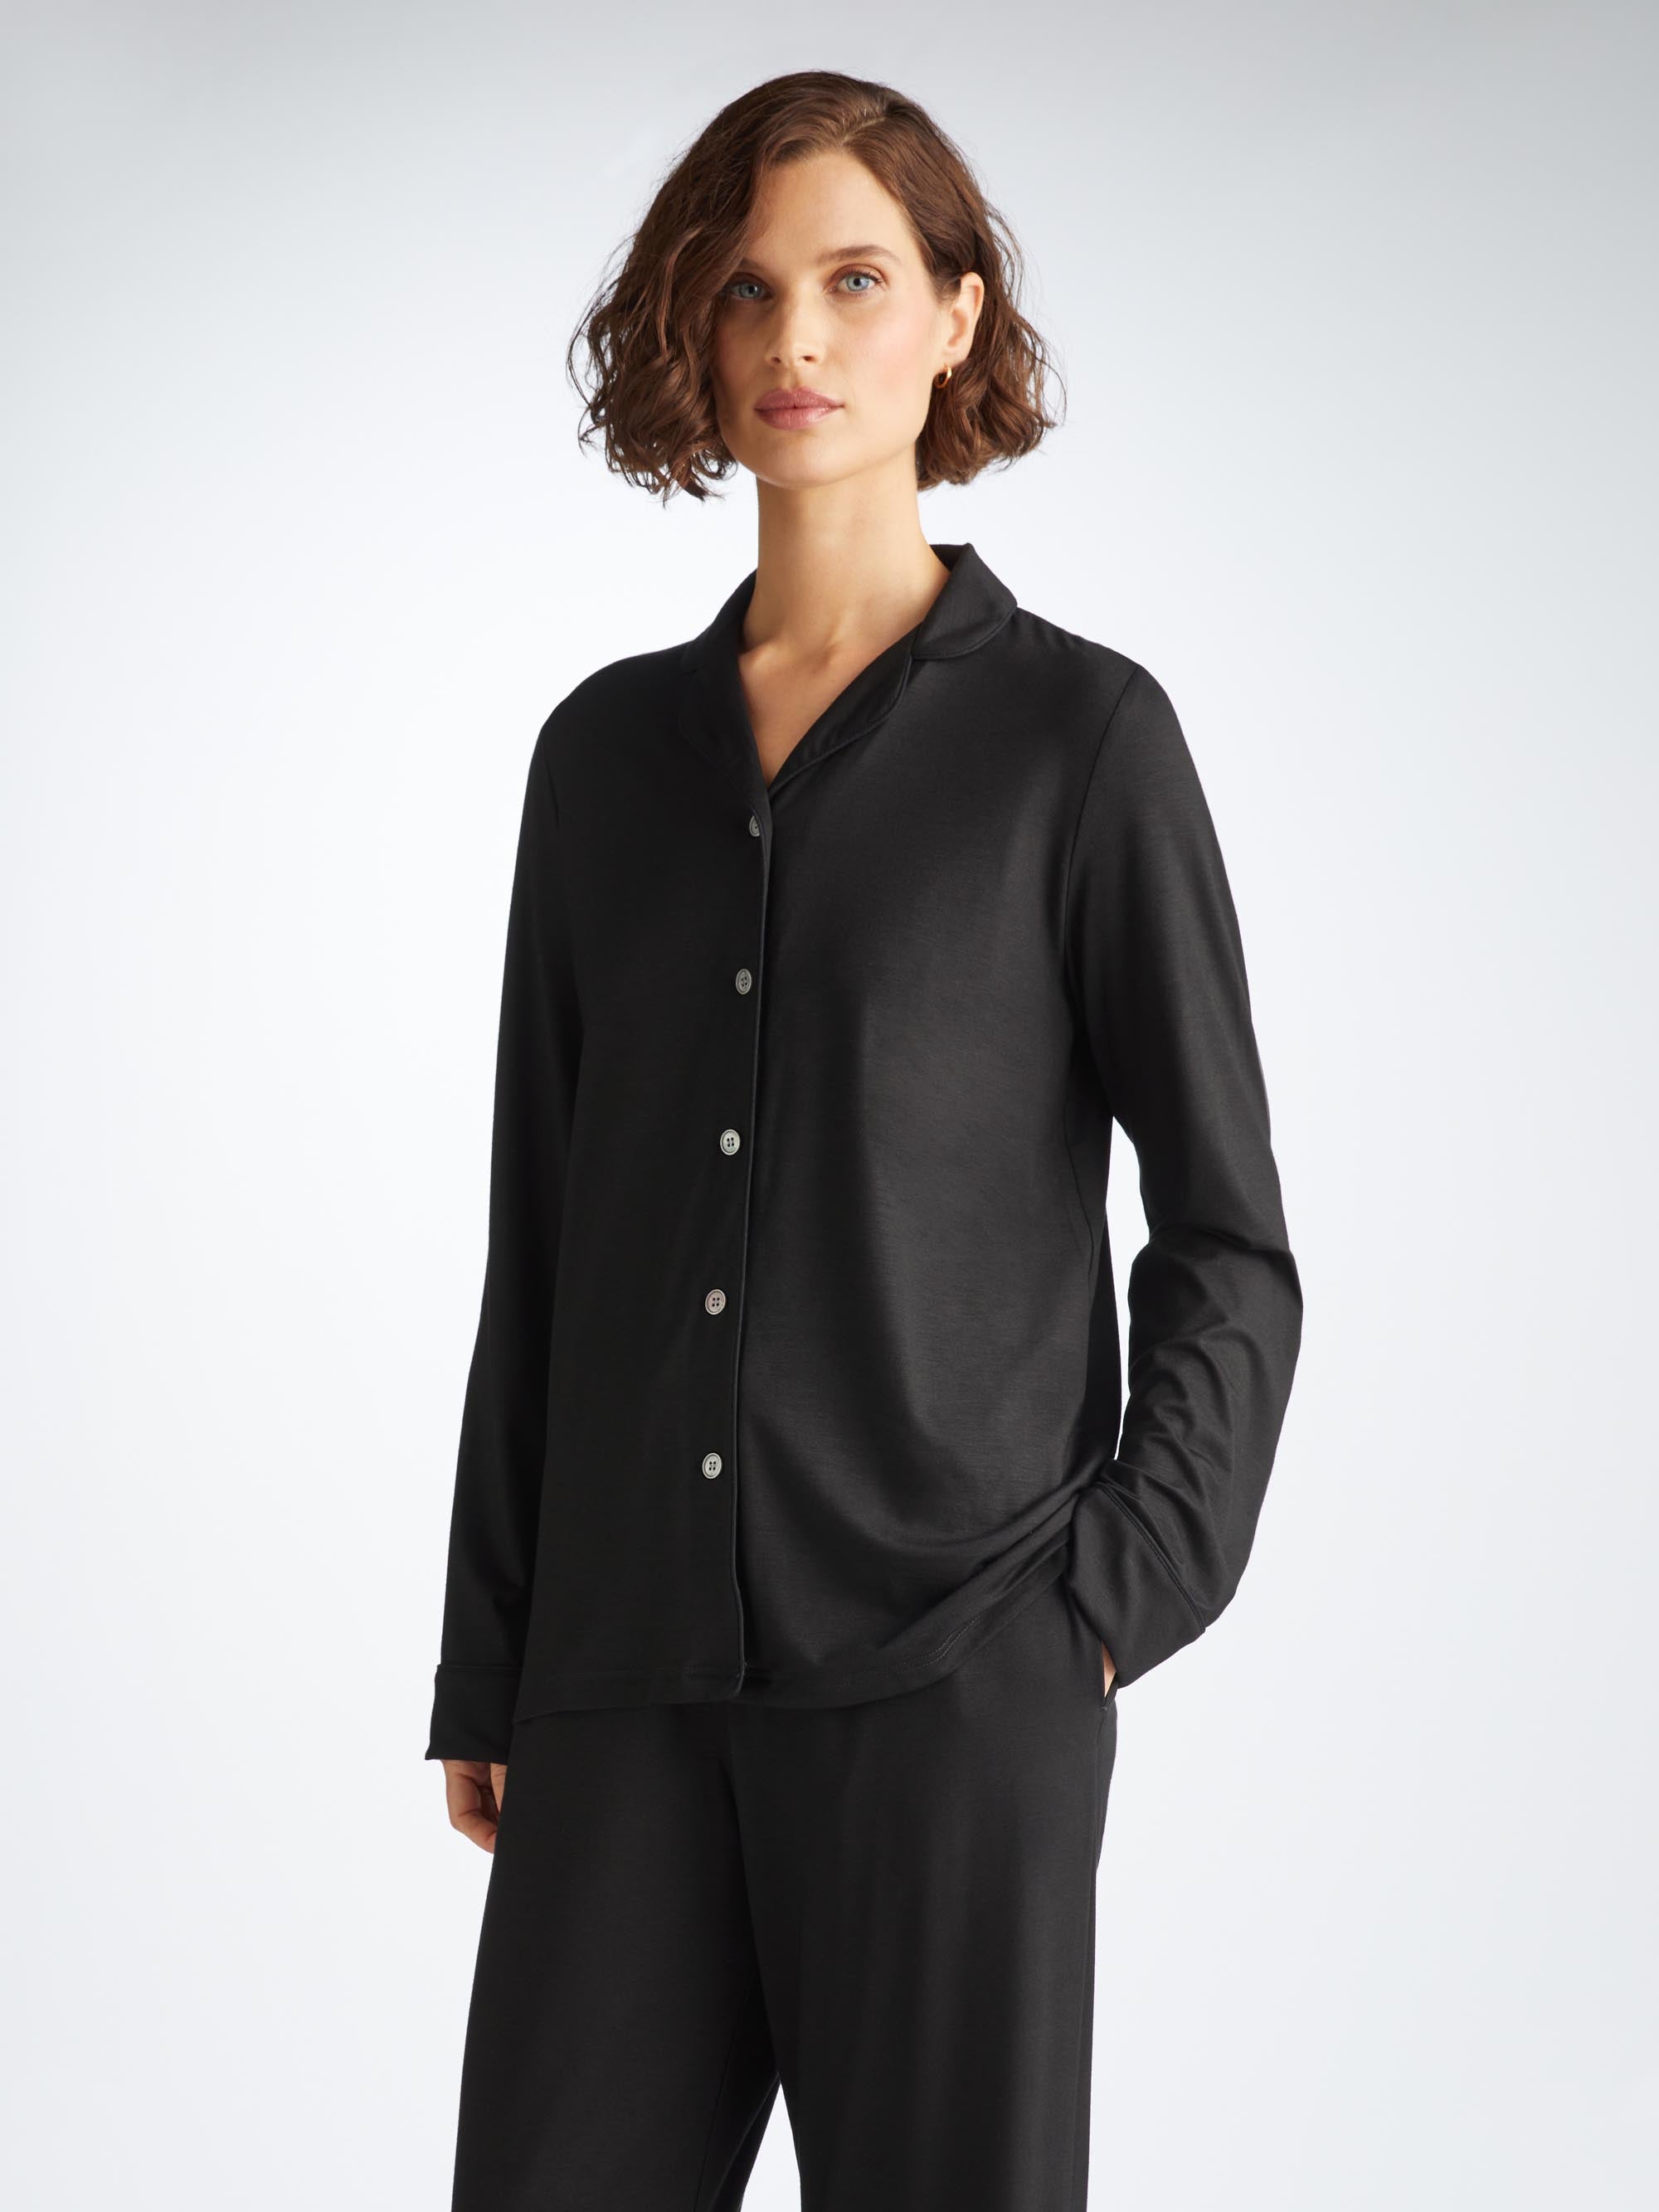 Women's Pyjamas Lara Micro Modal Stretch Black